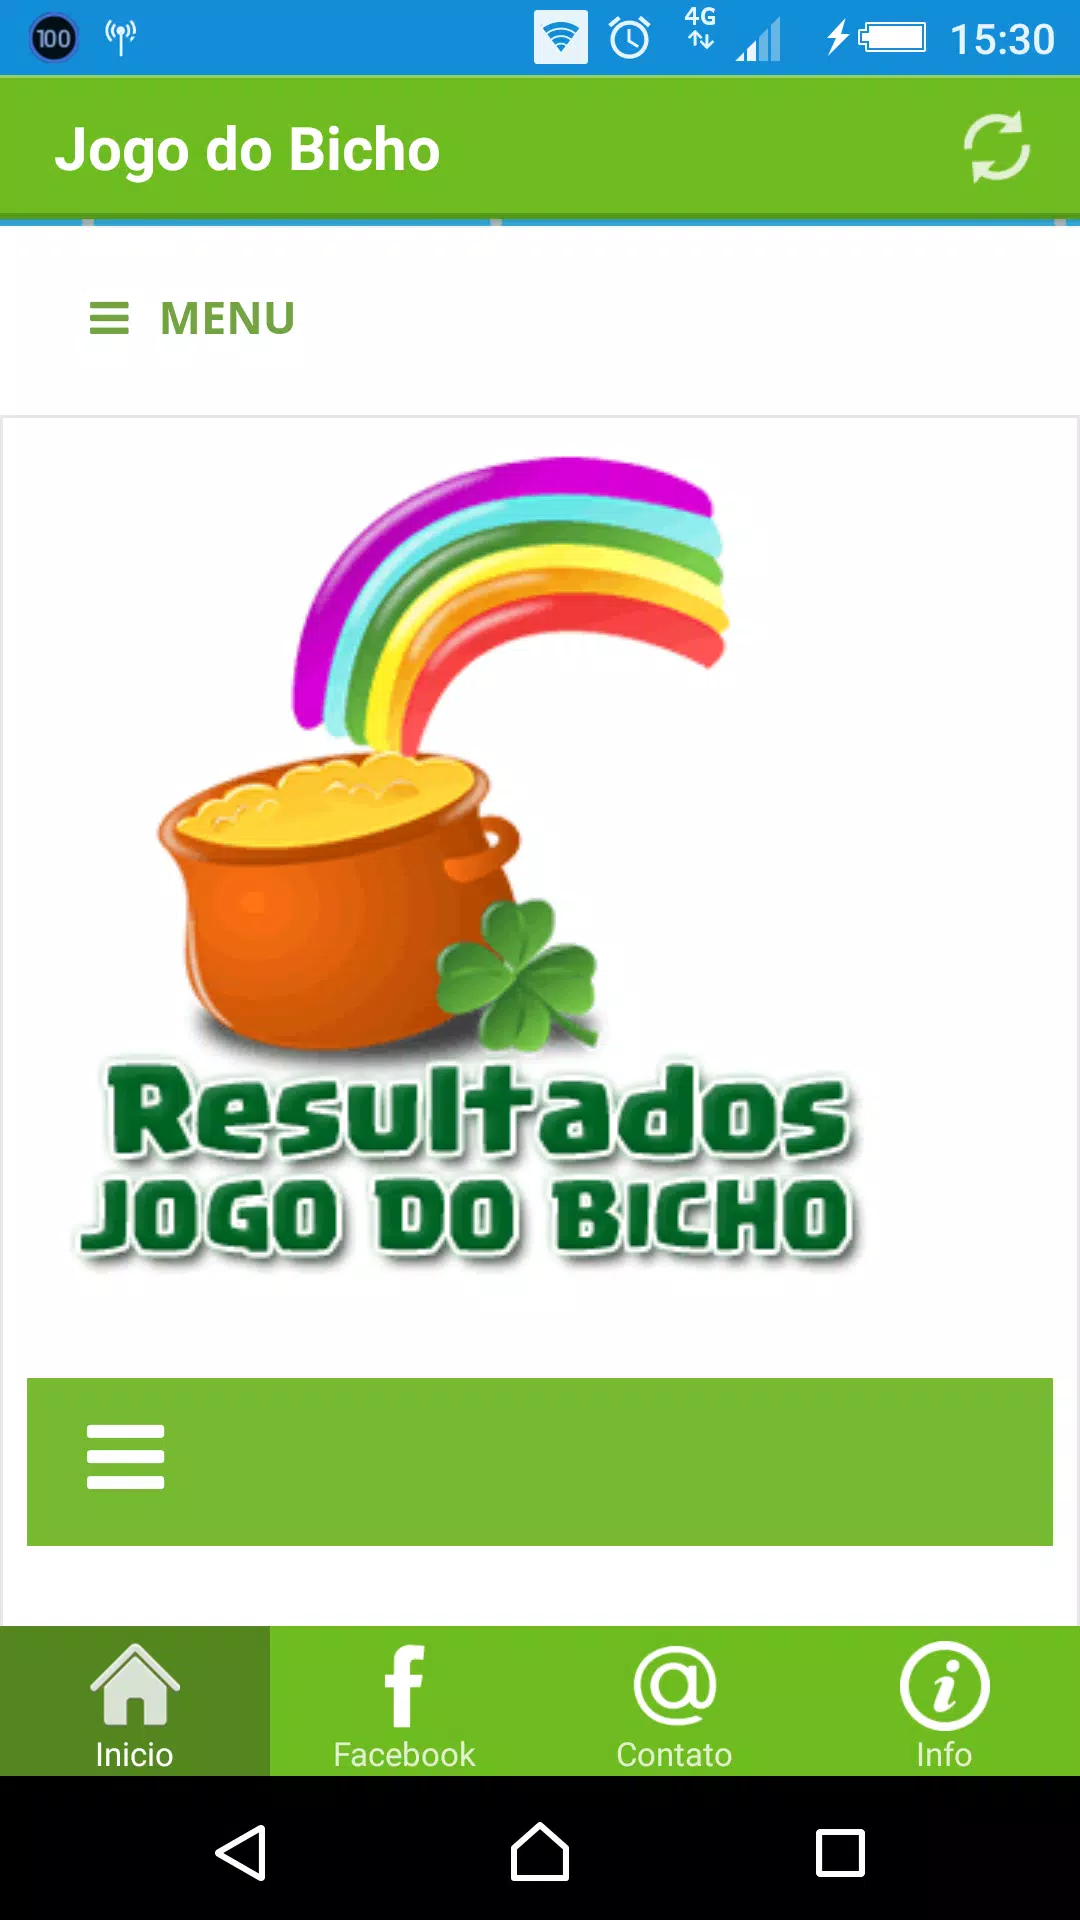 É o Bicho - Resultados Jogo do Bicho Apk Download for Android- Latest  version 3.0.5- com.worksit.eobicho